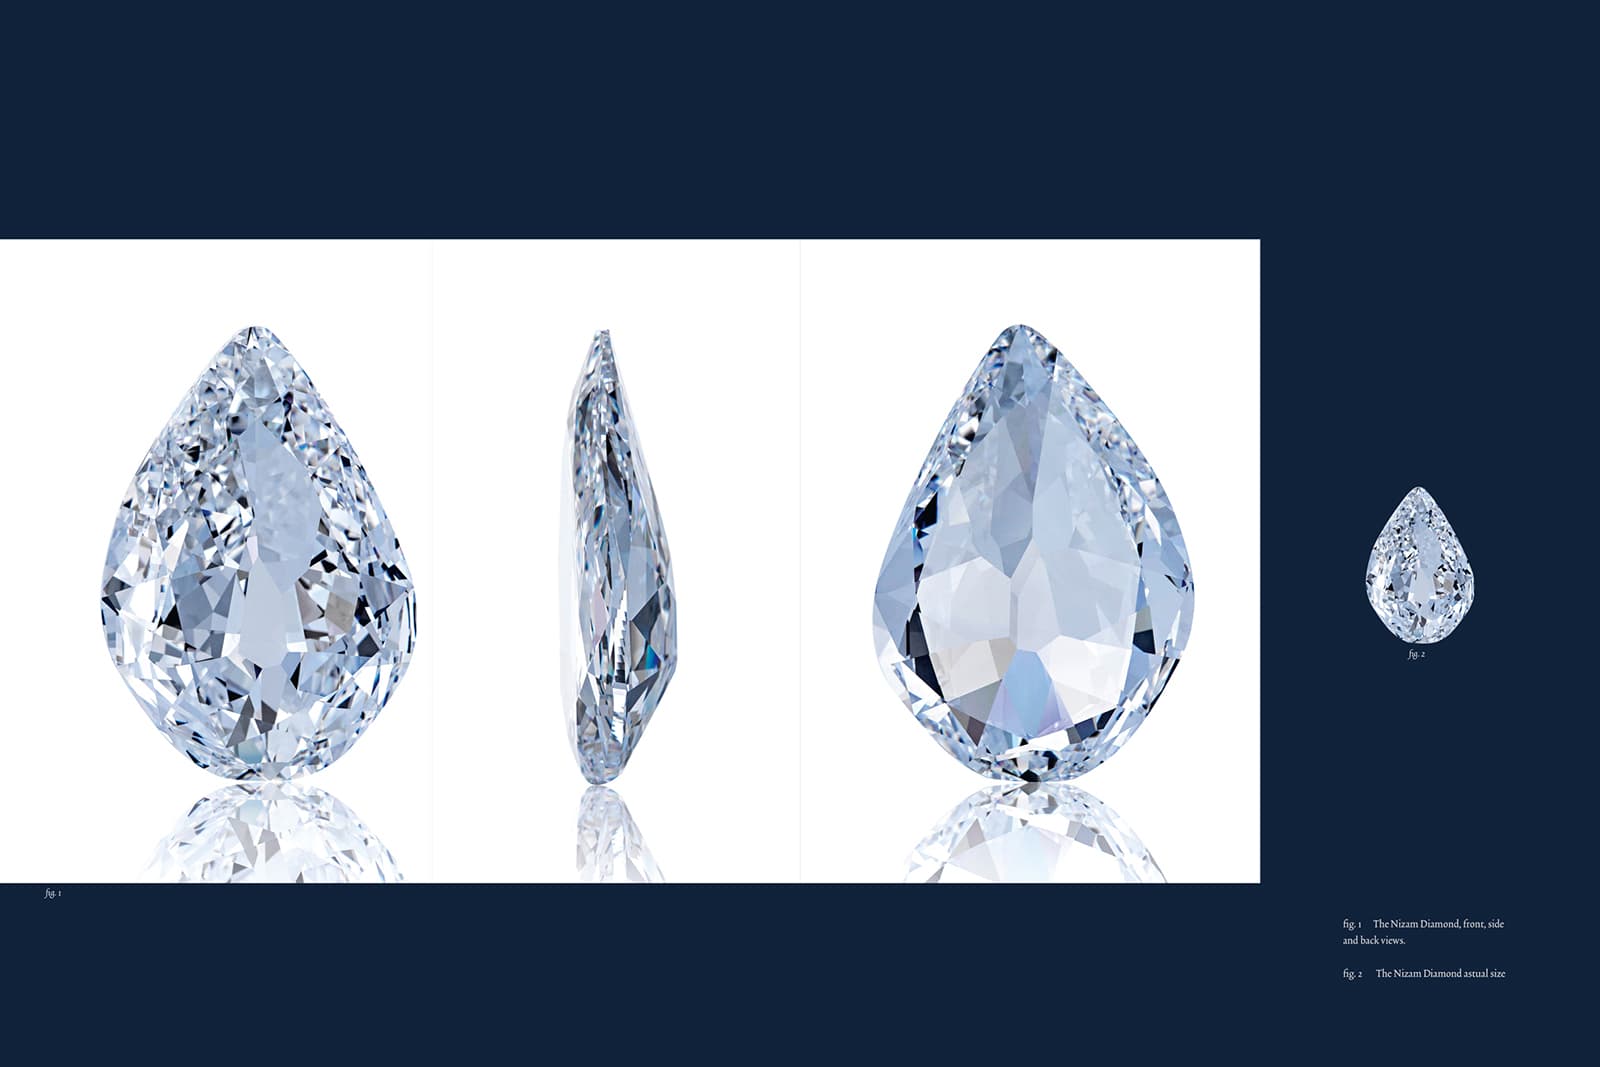 Всемирный музей алмазов объявил о публикации книги «Бриллианты сквозь время»